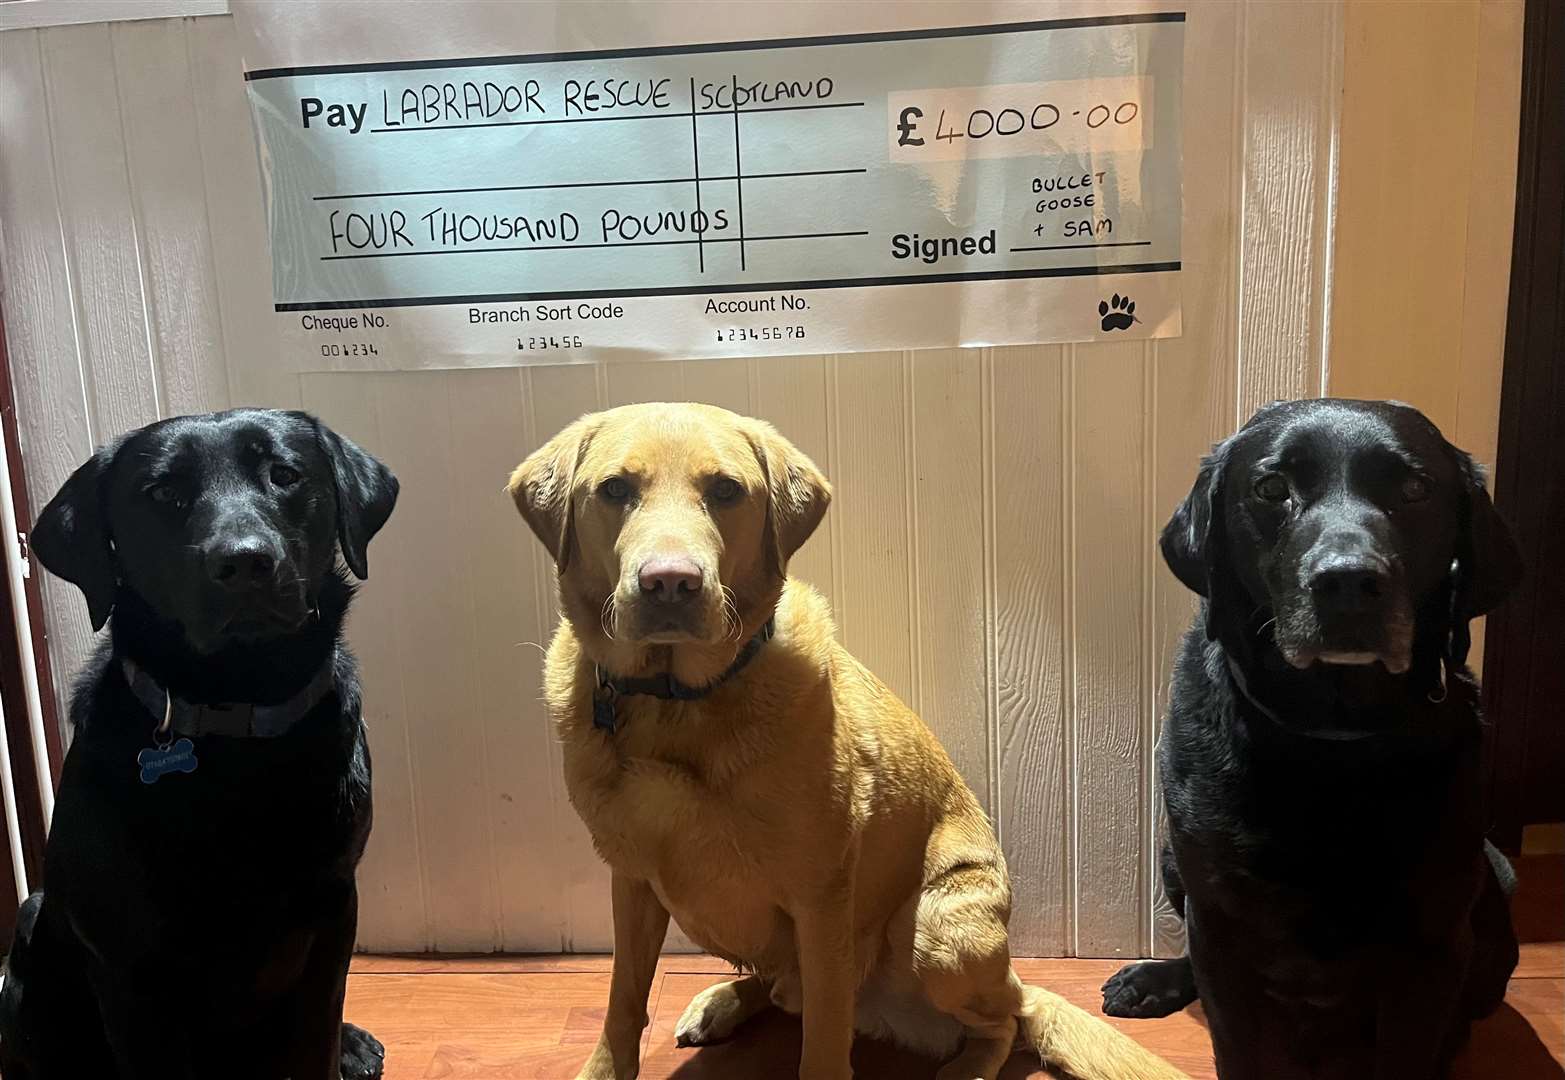 From left: Goose, Sam and Bullet with Sarah’s cheque for Labrador Retriever Rescue Scotland.